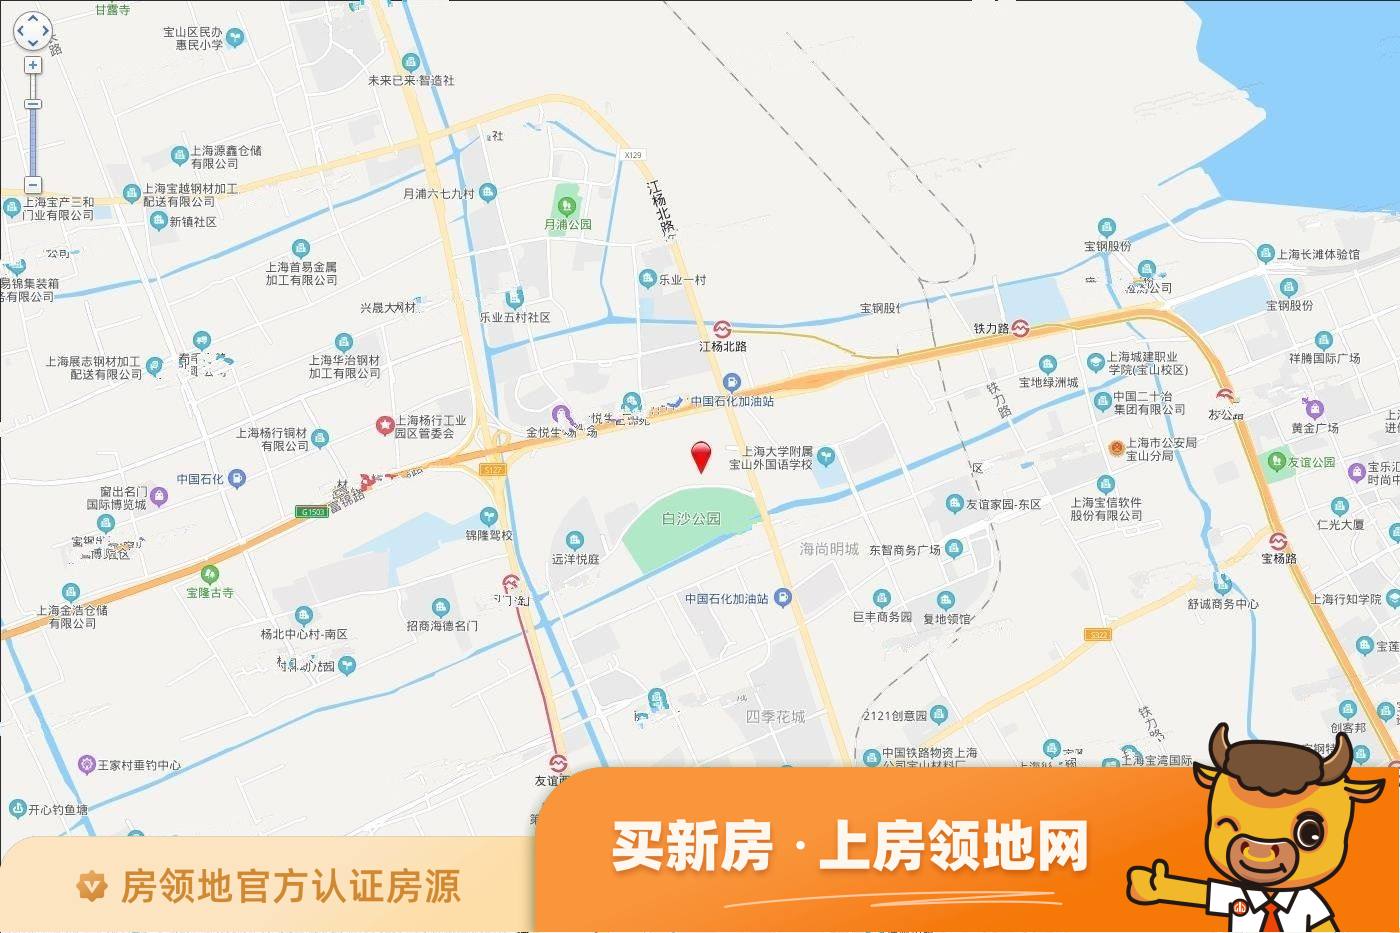 中辰未来港位置交通图8